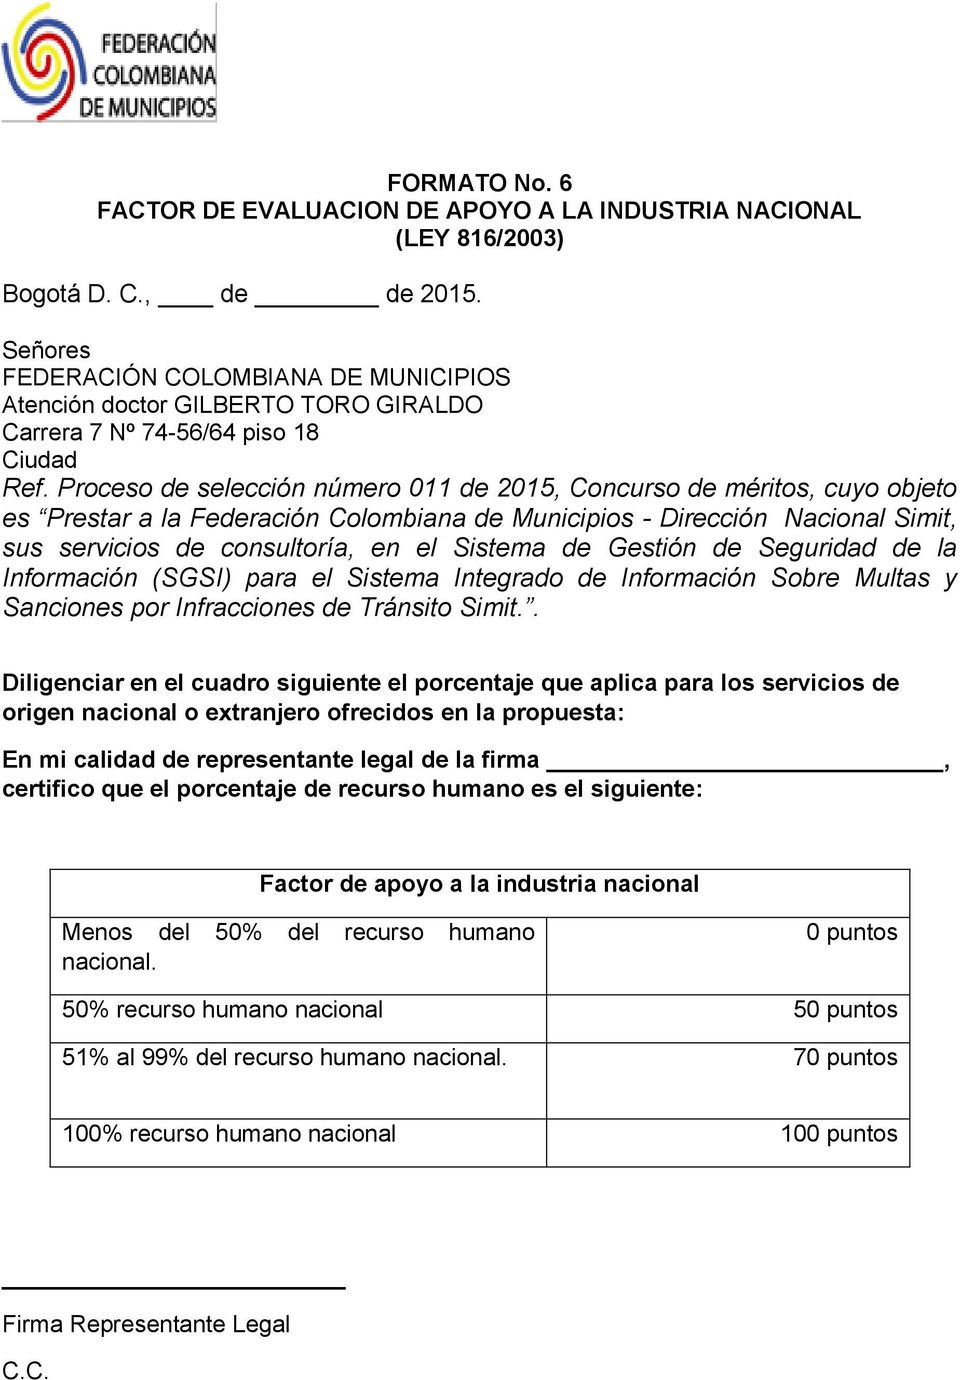 Proceso de selección número 011 de 2015, Concurso de méritos, cuyo objeto es Prestar a la Federación Colombiana de Municipios - Dirección Nacional Simit, sus servicios de consultoría, en el Sistema